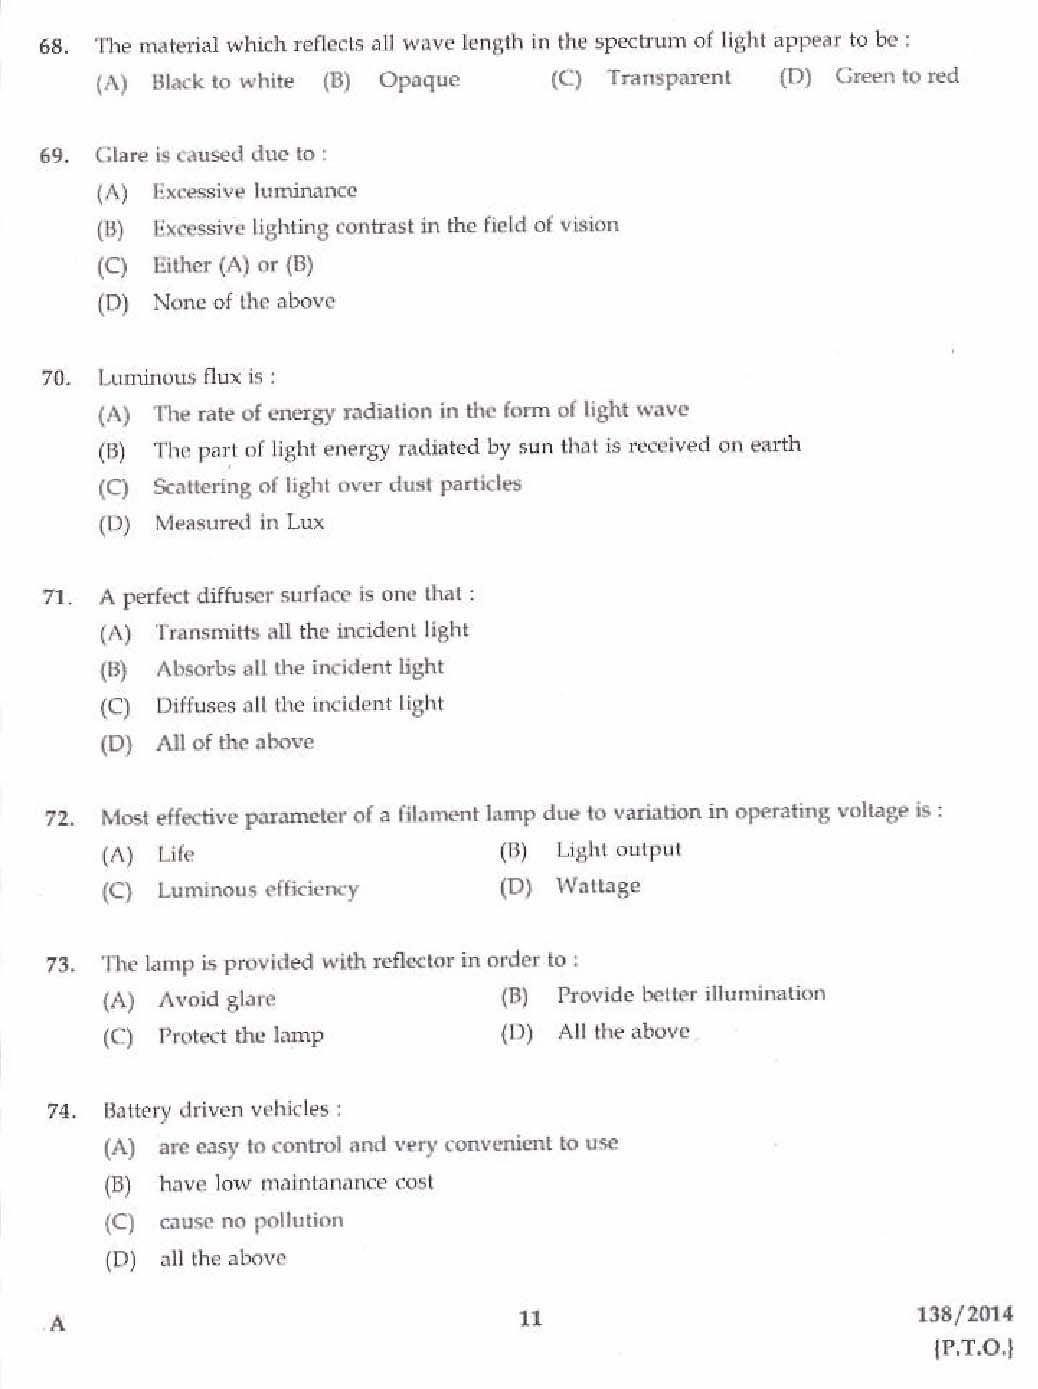 Kerala PSC Junior Instructor Exam Question Paper Code 1382014 9